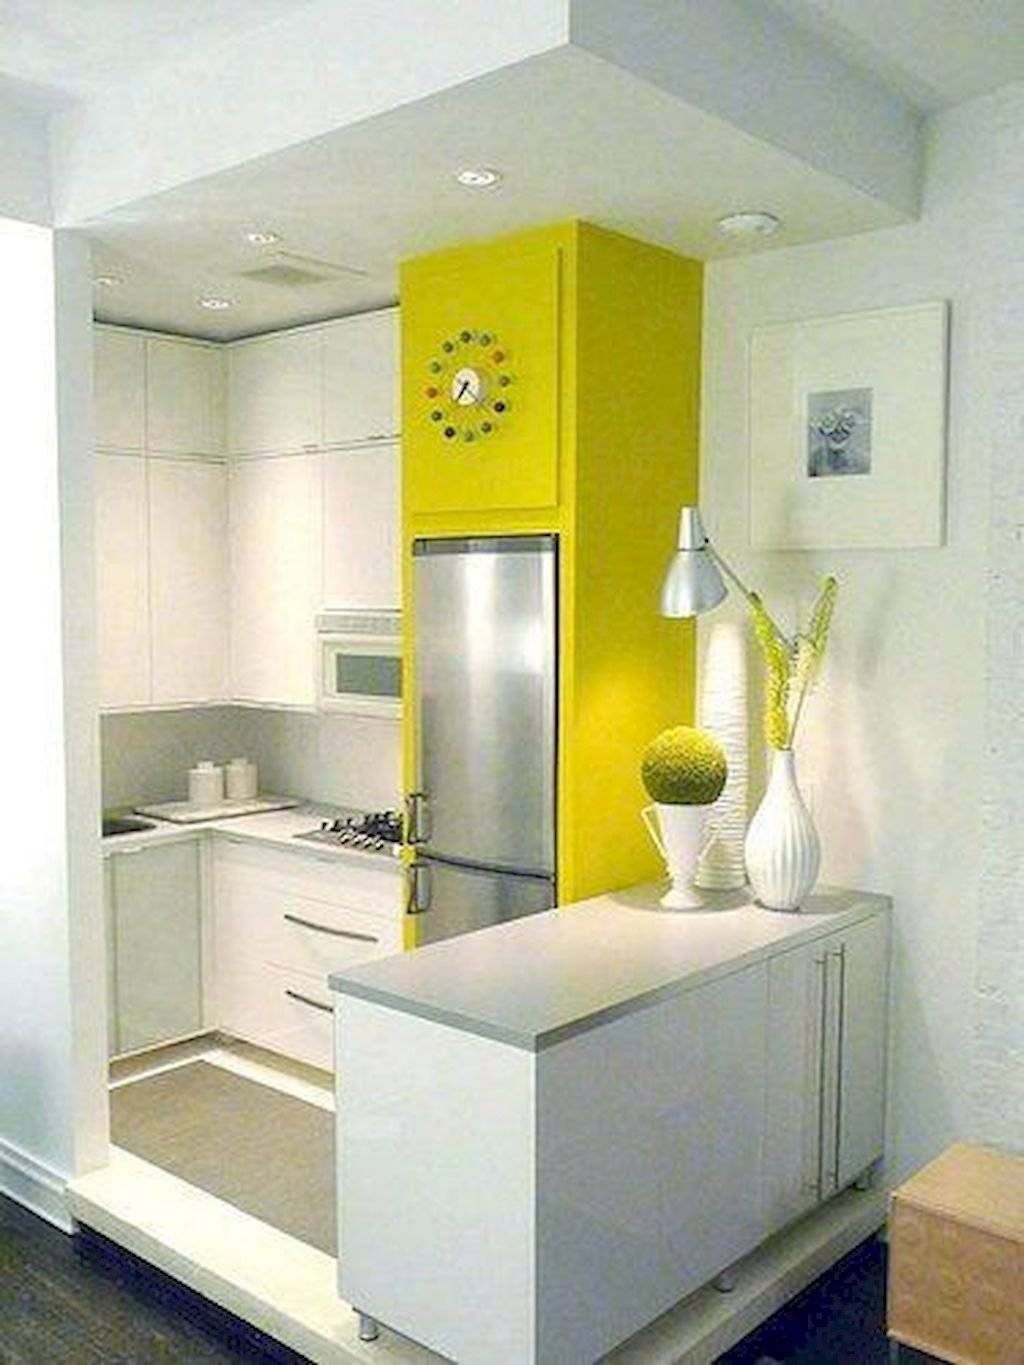 Как разместить холодильник на маленькой кухне фото